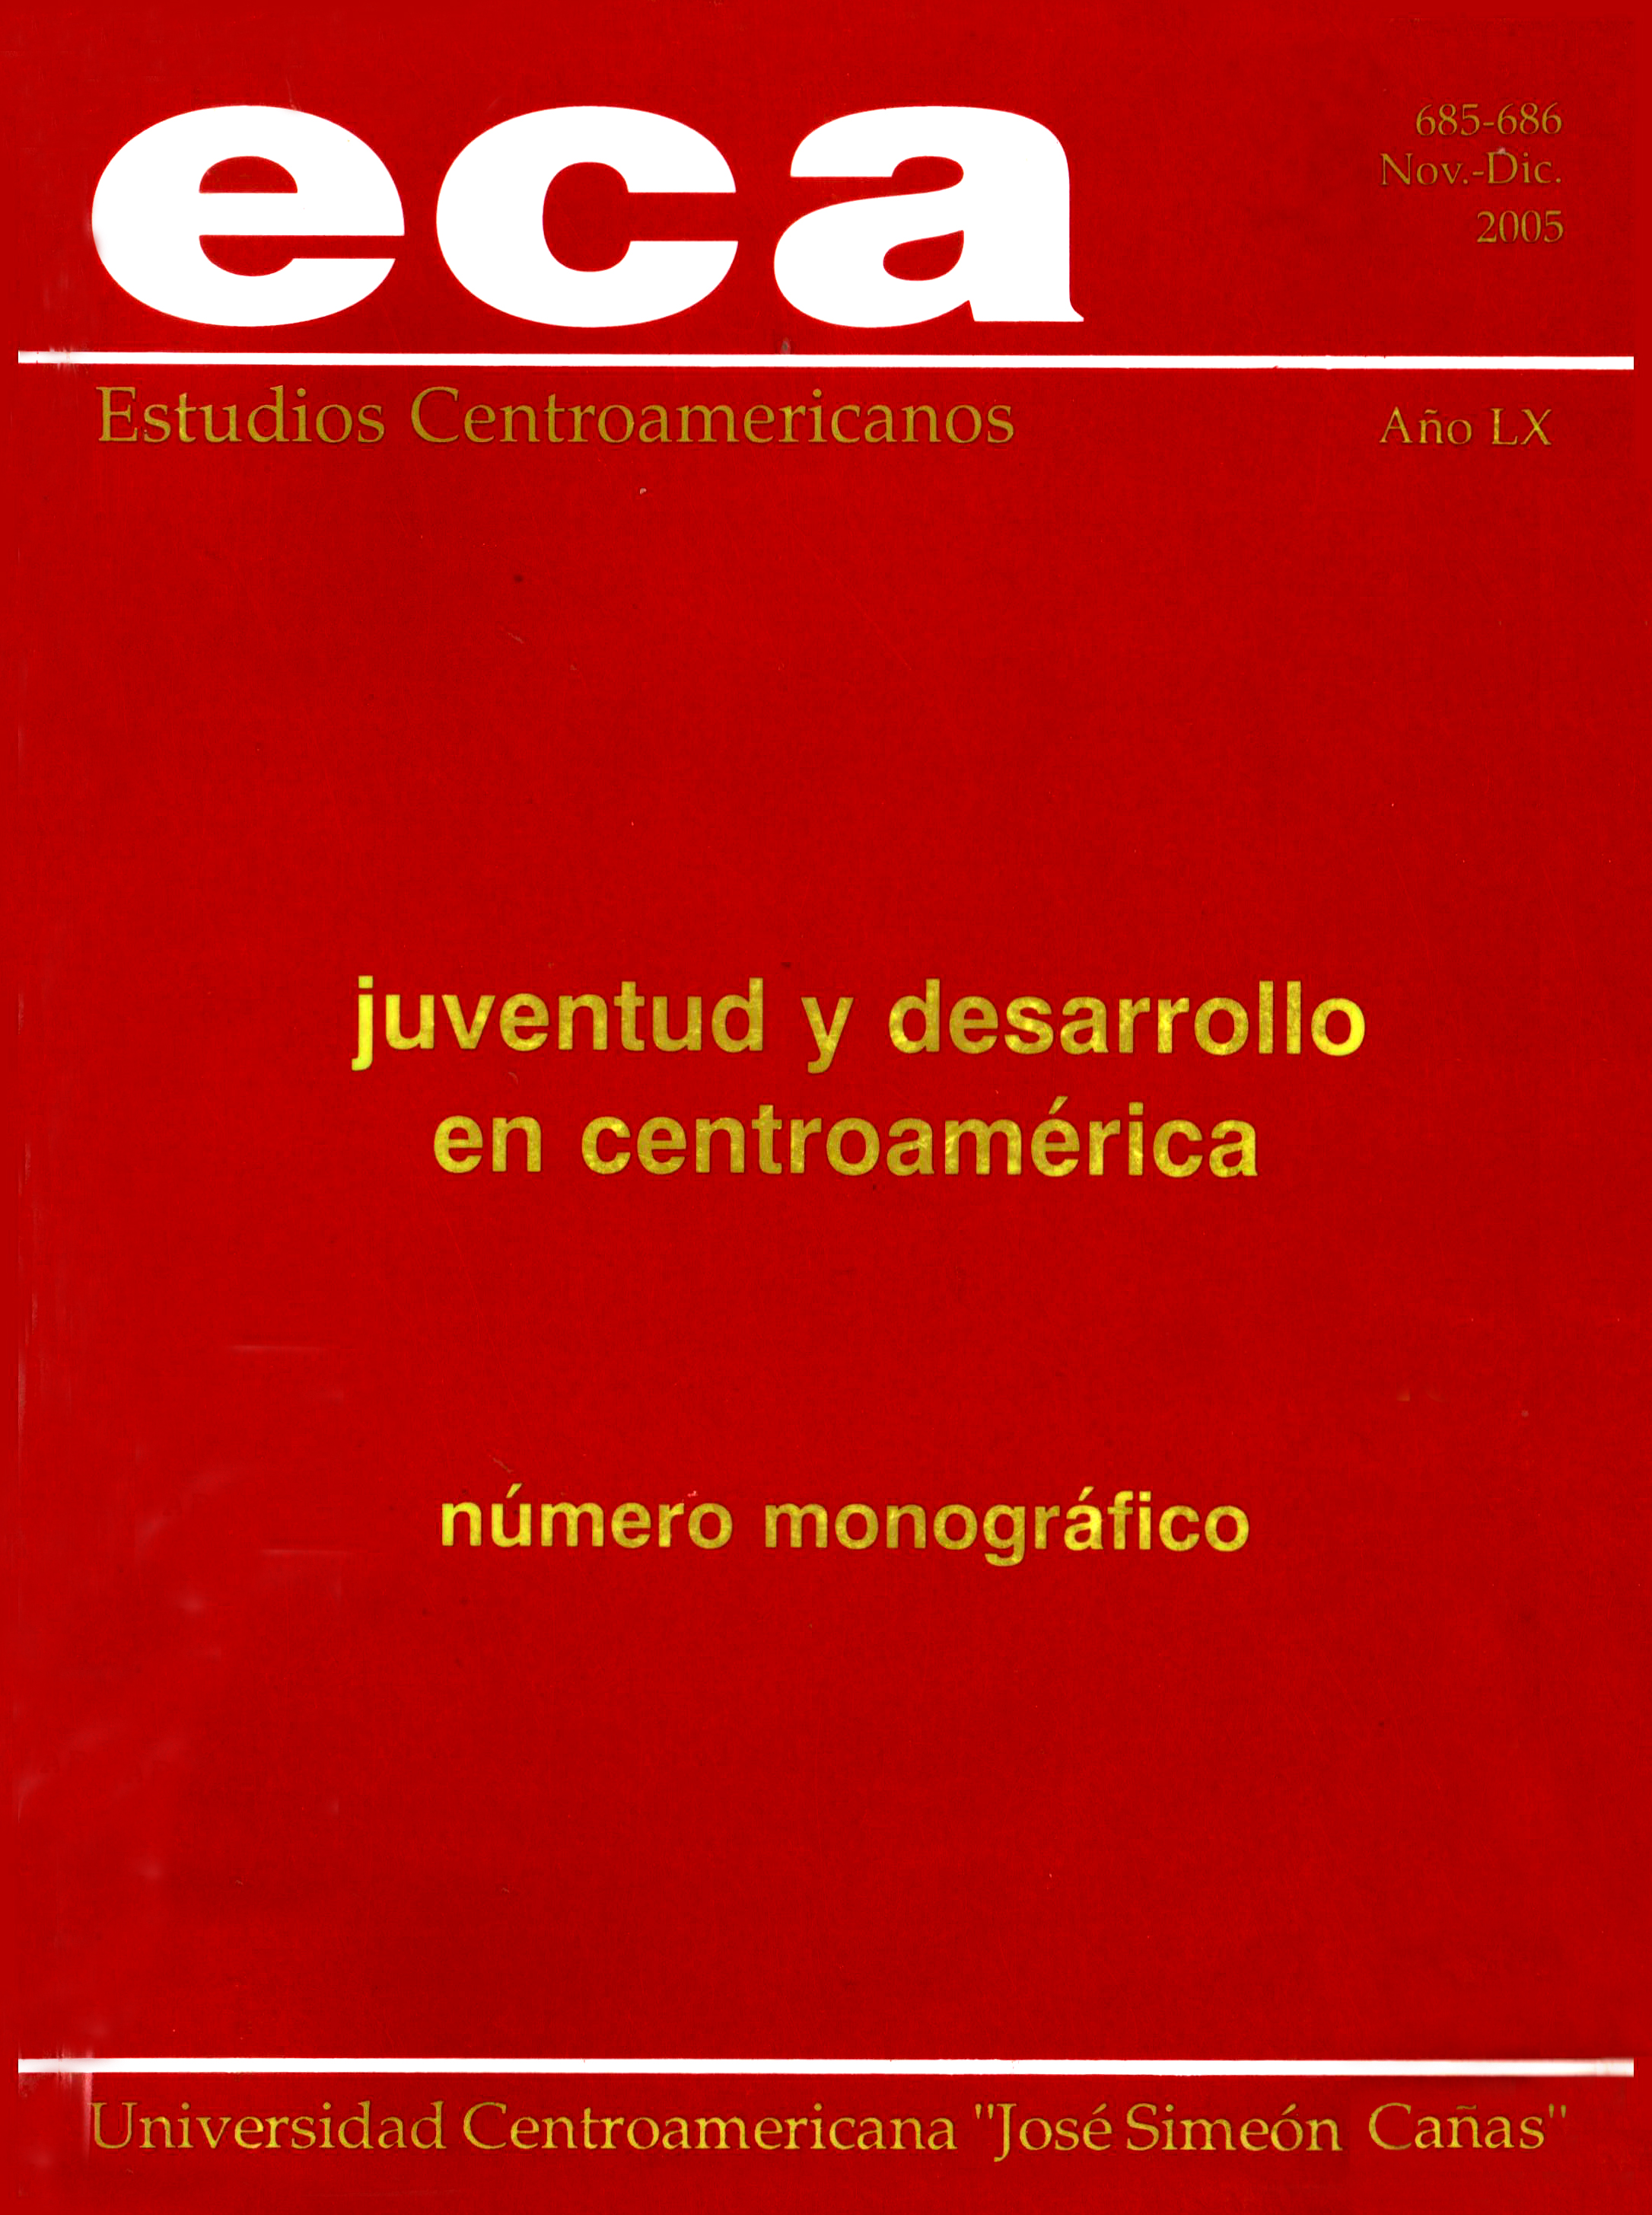 					Ver Vol. 60 Núm. 685-686 (2005)
				